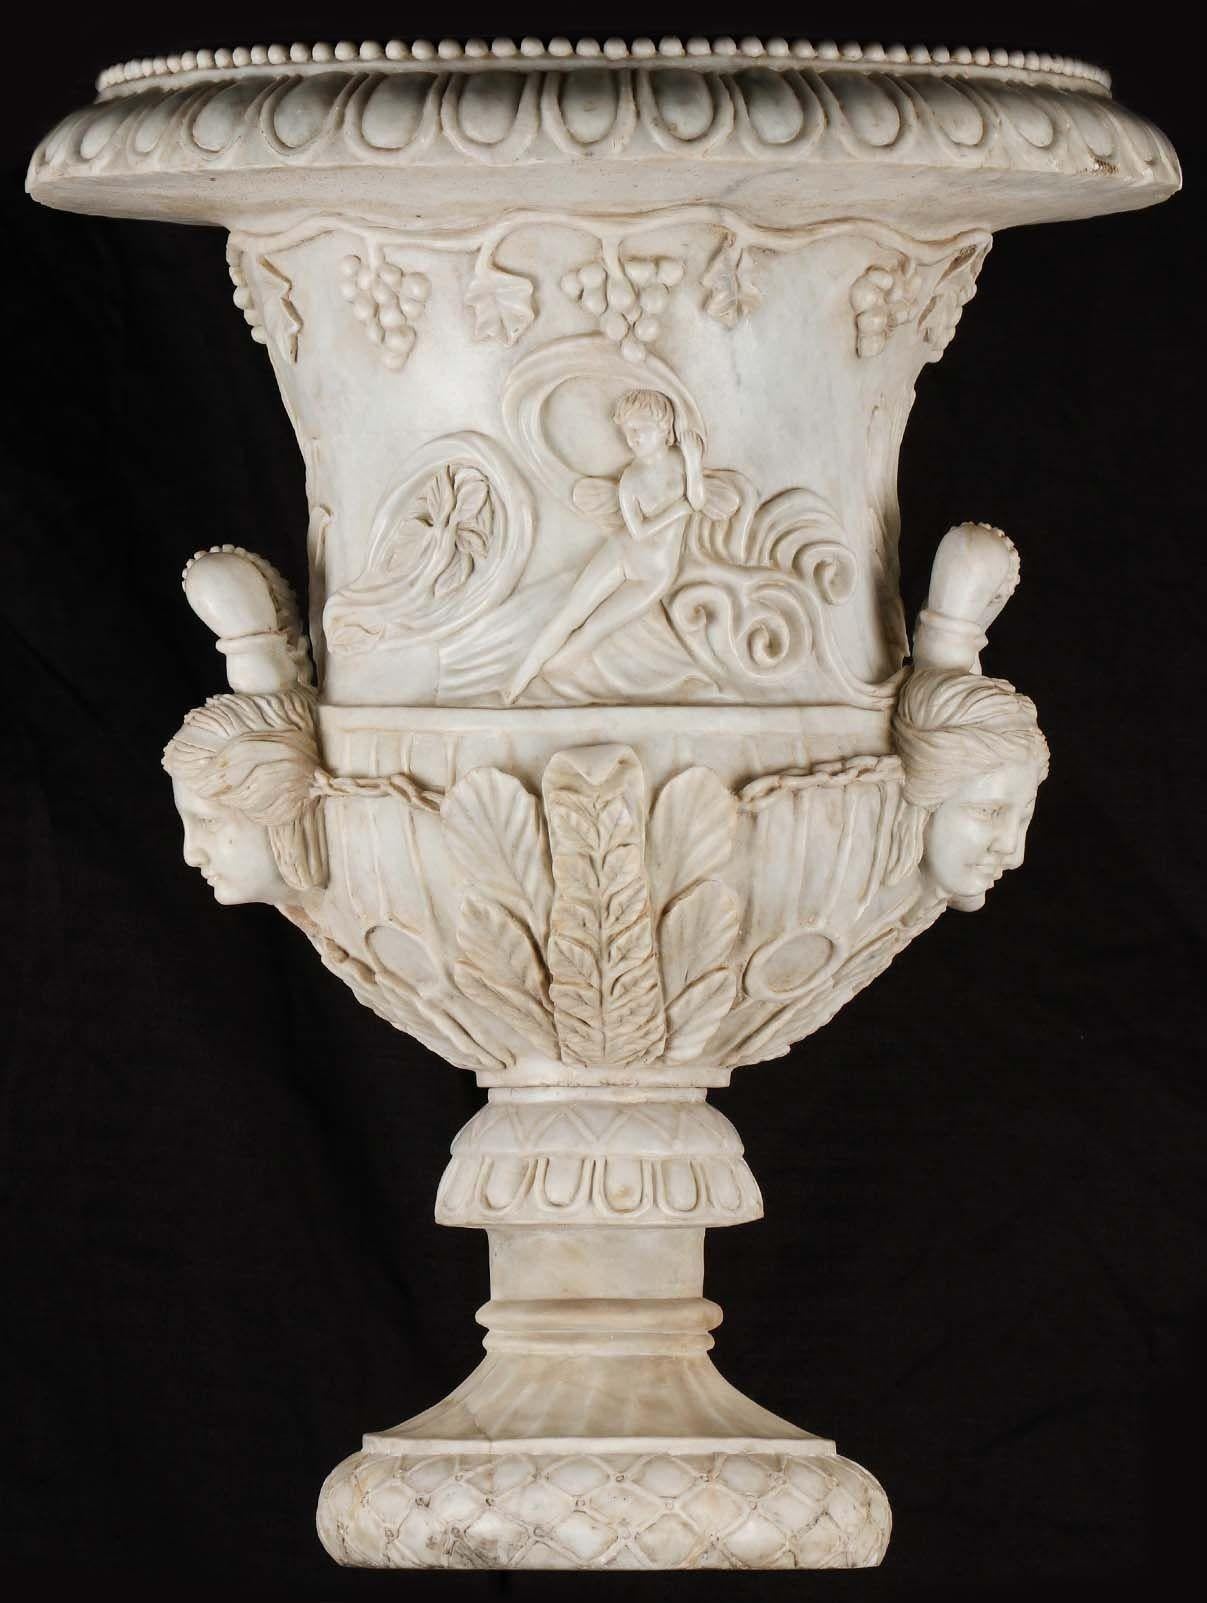 Paire de belles urnes de jardin palatial en forme de cloche, sculptées en marbre blanc fin, représentant des images classiques de figures féminines et de vignes. Inspiré du vase Médicis de l'époque romaine. 
Fabriqué en Italie, fin du XVIIIe-début